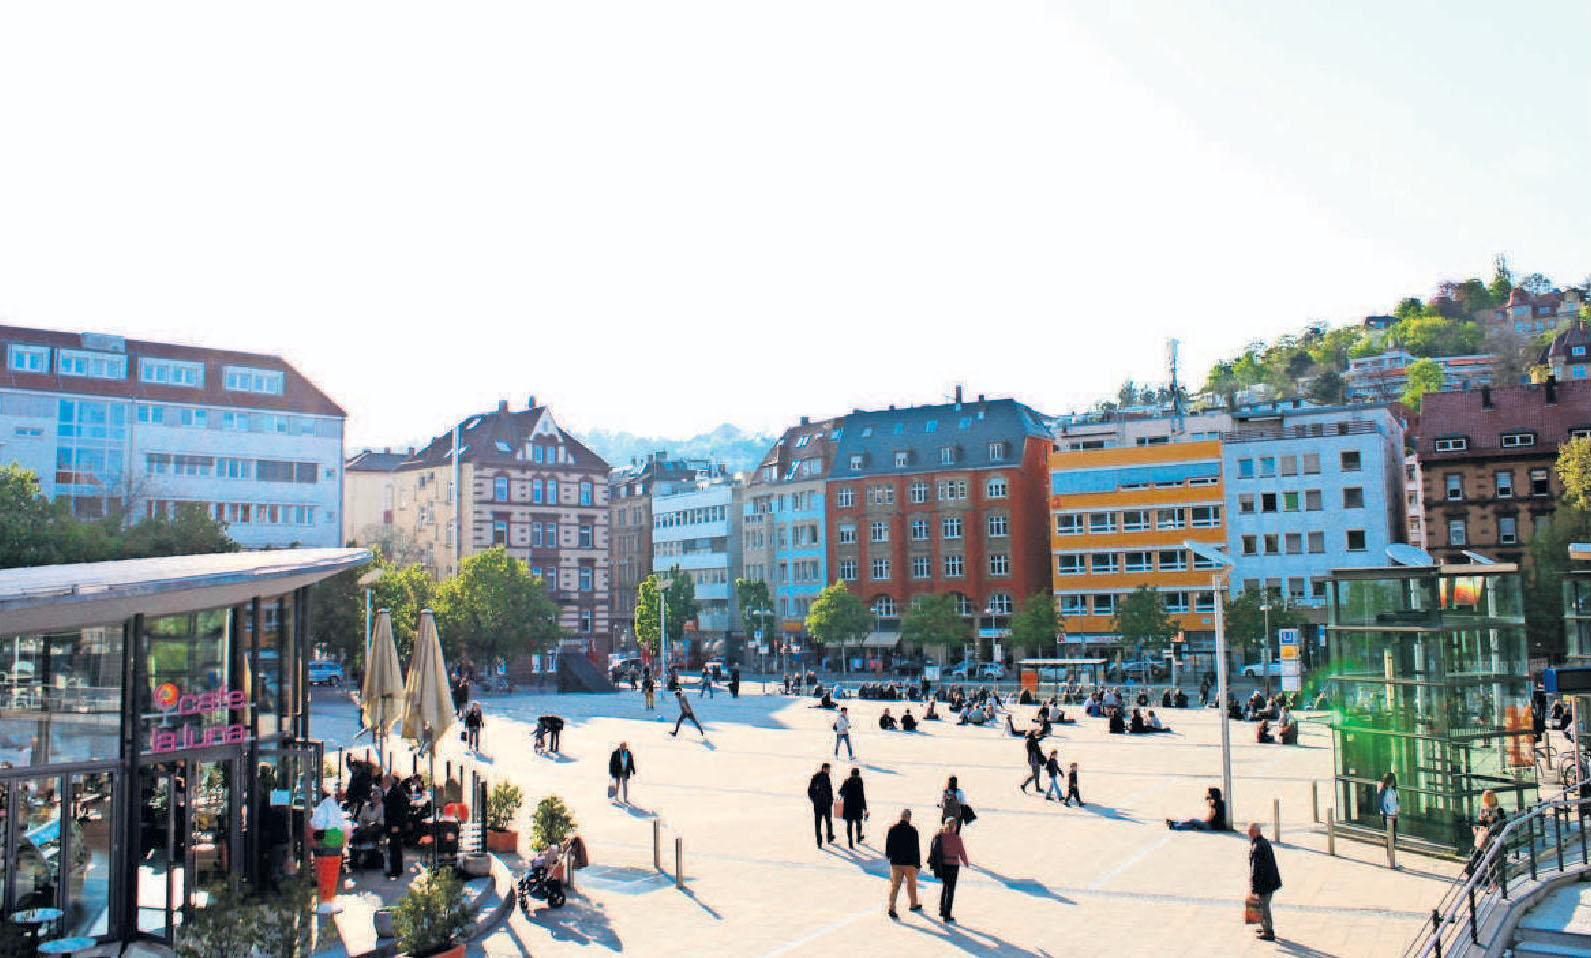 Mittelpunkt in Stuttgarts Süden ist der Marienplatz mit seiner Freitreppe. Der Platz eignet sich ideal für Veranstaltungen und ist viel besucht. Foto: Tatjana Eberhardt